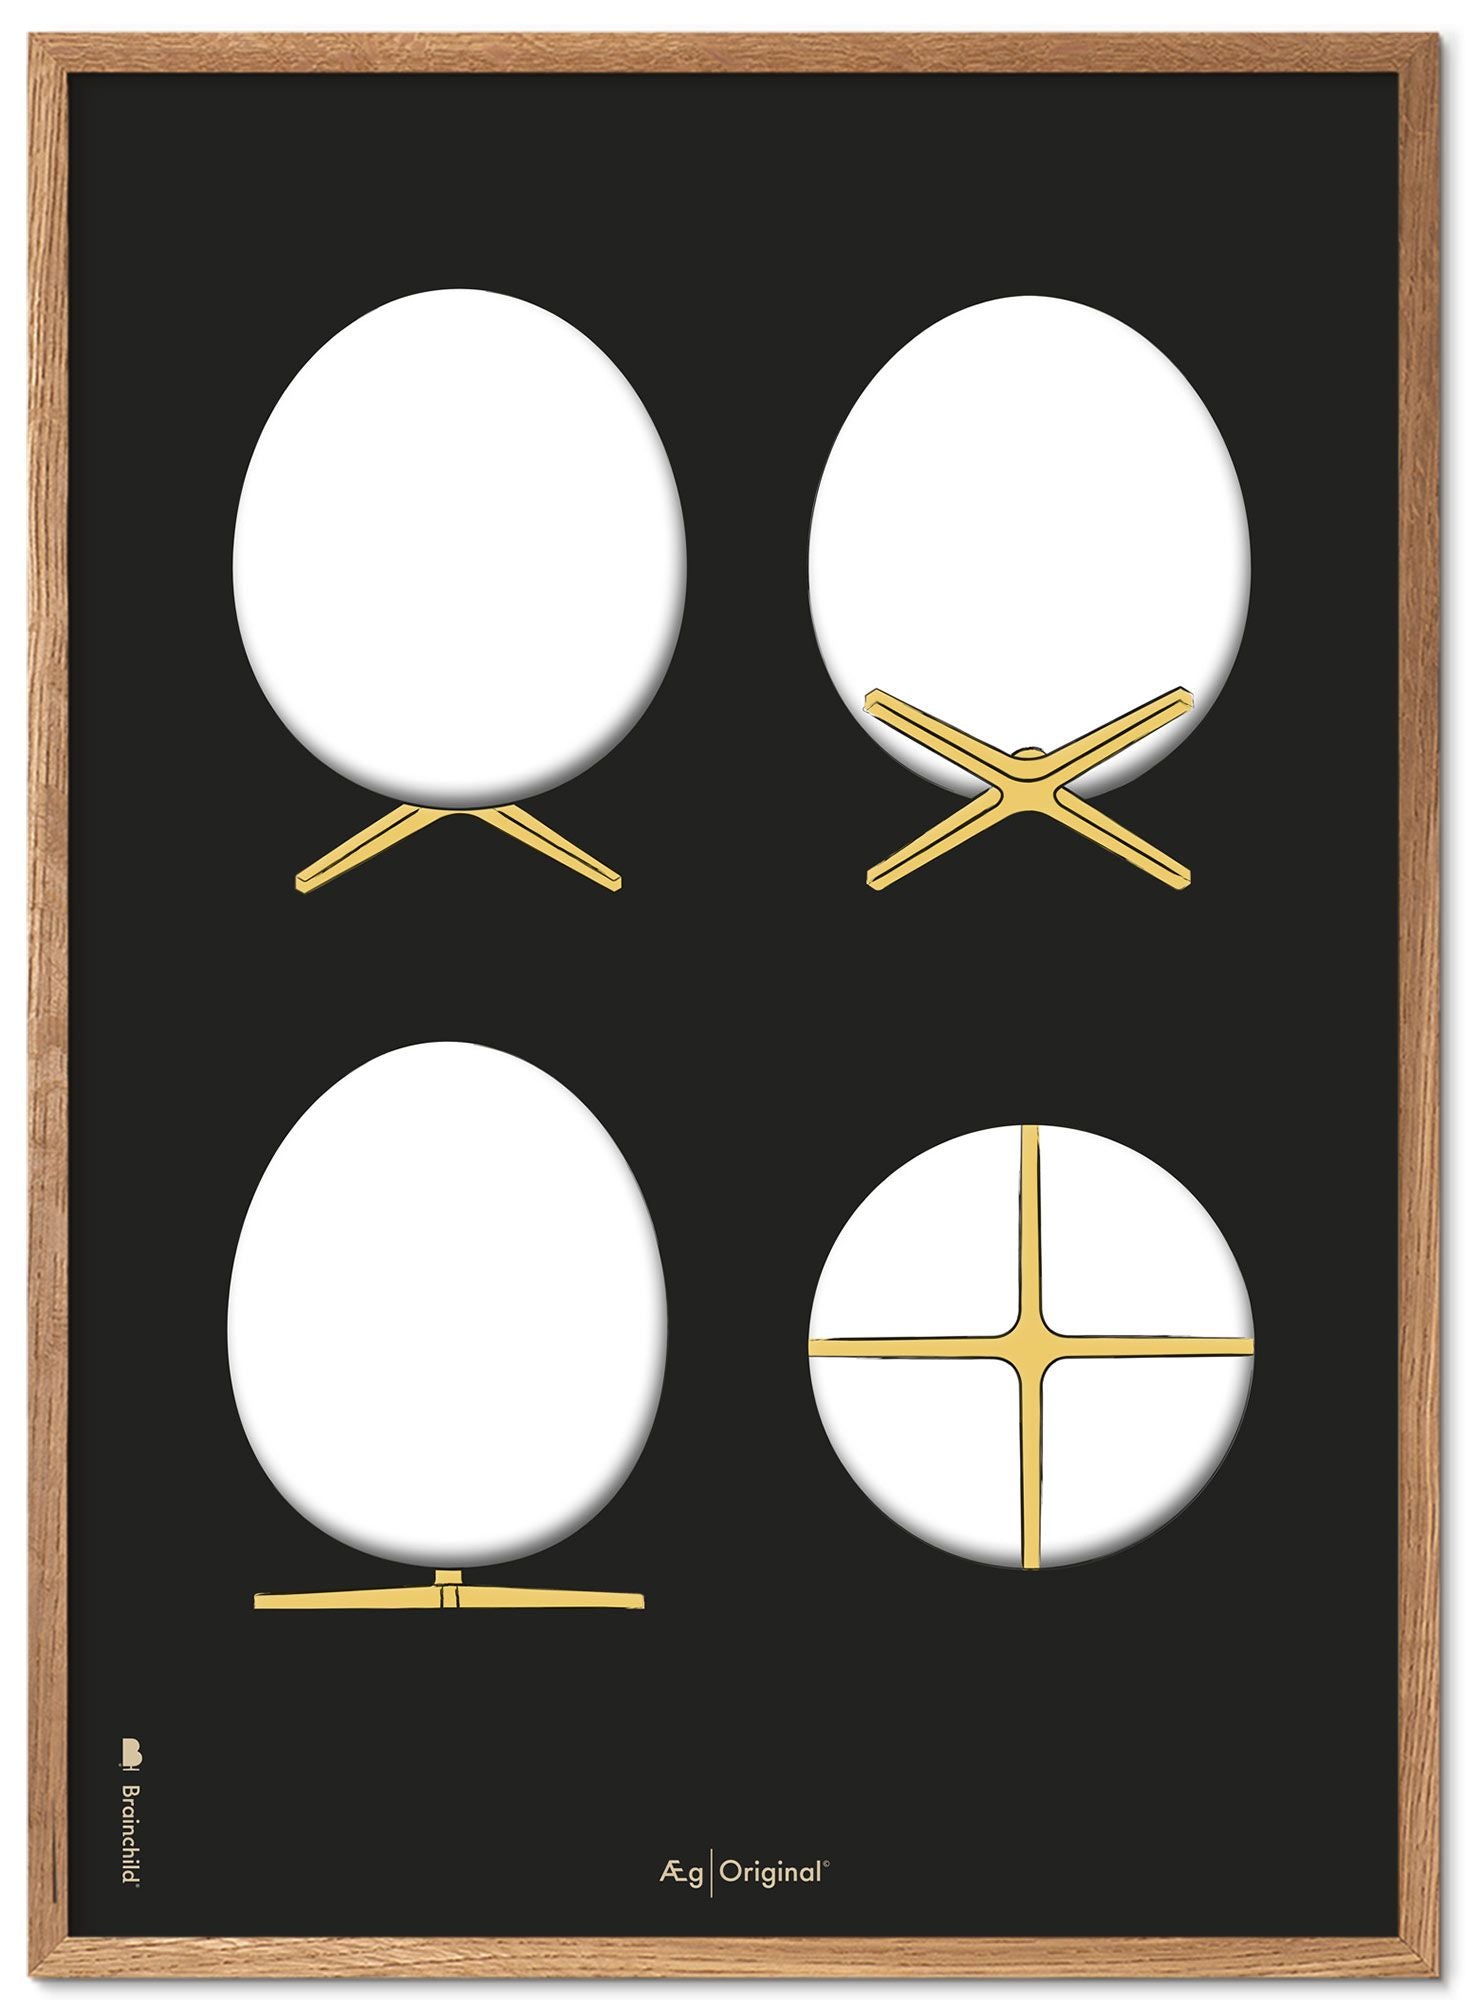 Brainchild Cadre pour affiche The Egg Design Sketches en bois clair A5, fond noir